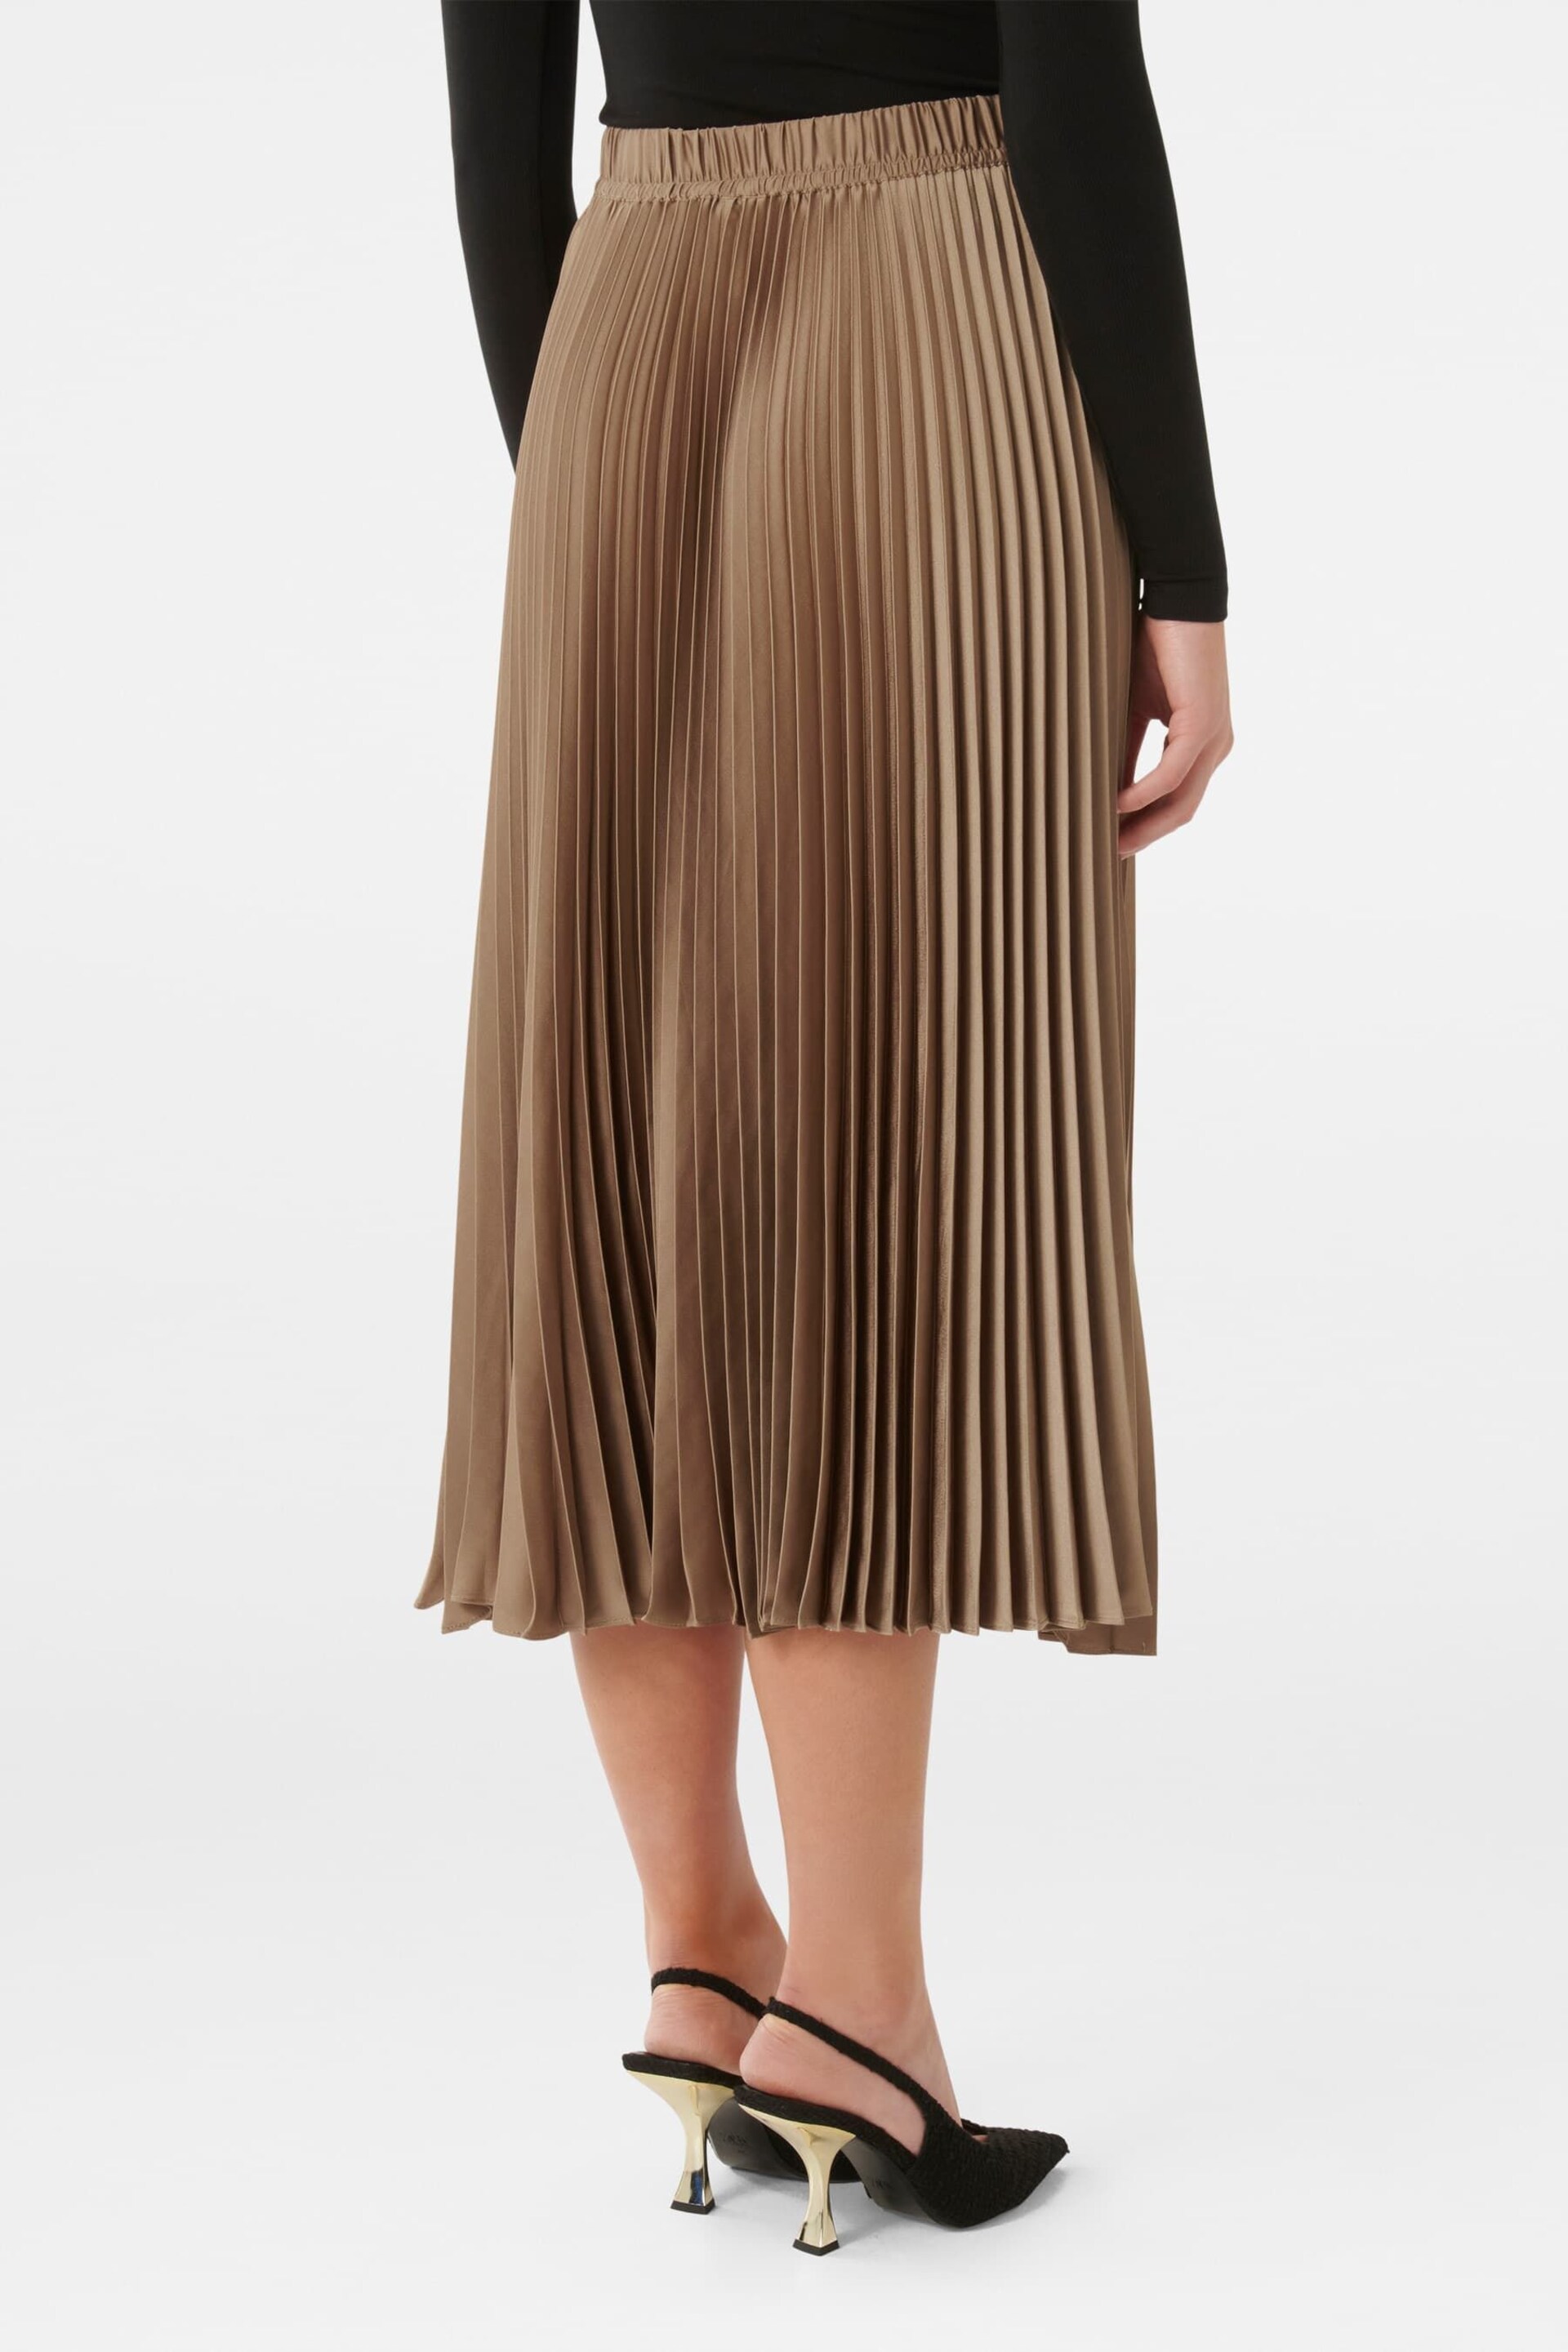 Forever New Gold Ester Satin Pleated Skirt - Image 2 of 5